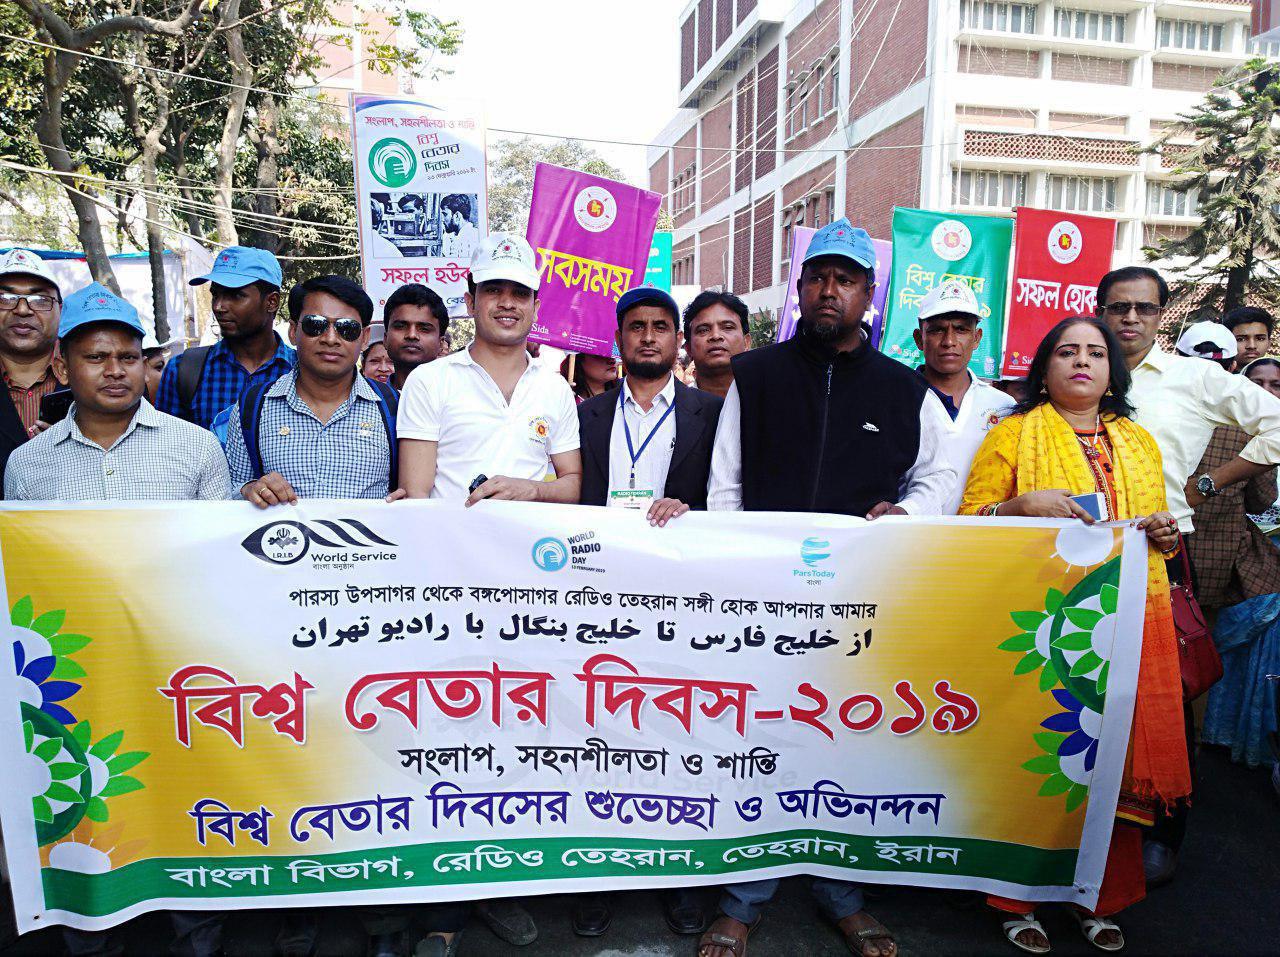 حضور رادیو بنگلا در جشنواره رادیوهای بین المللی  داکا